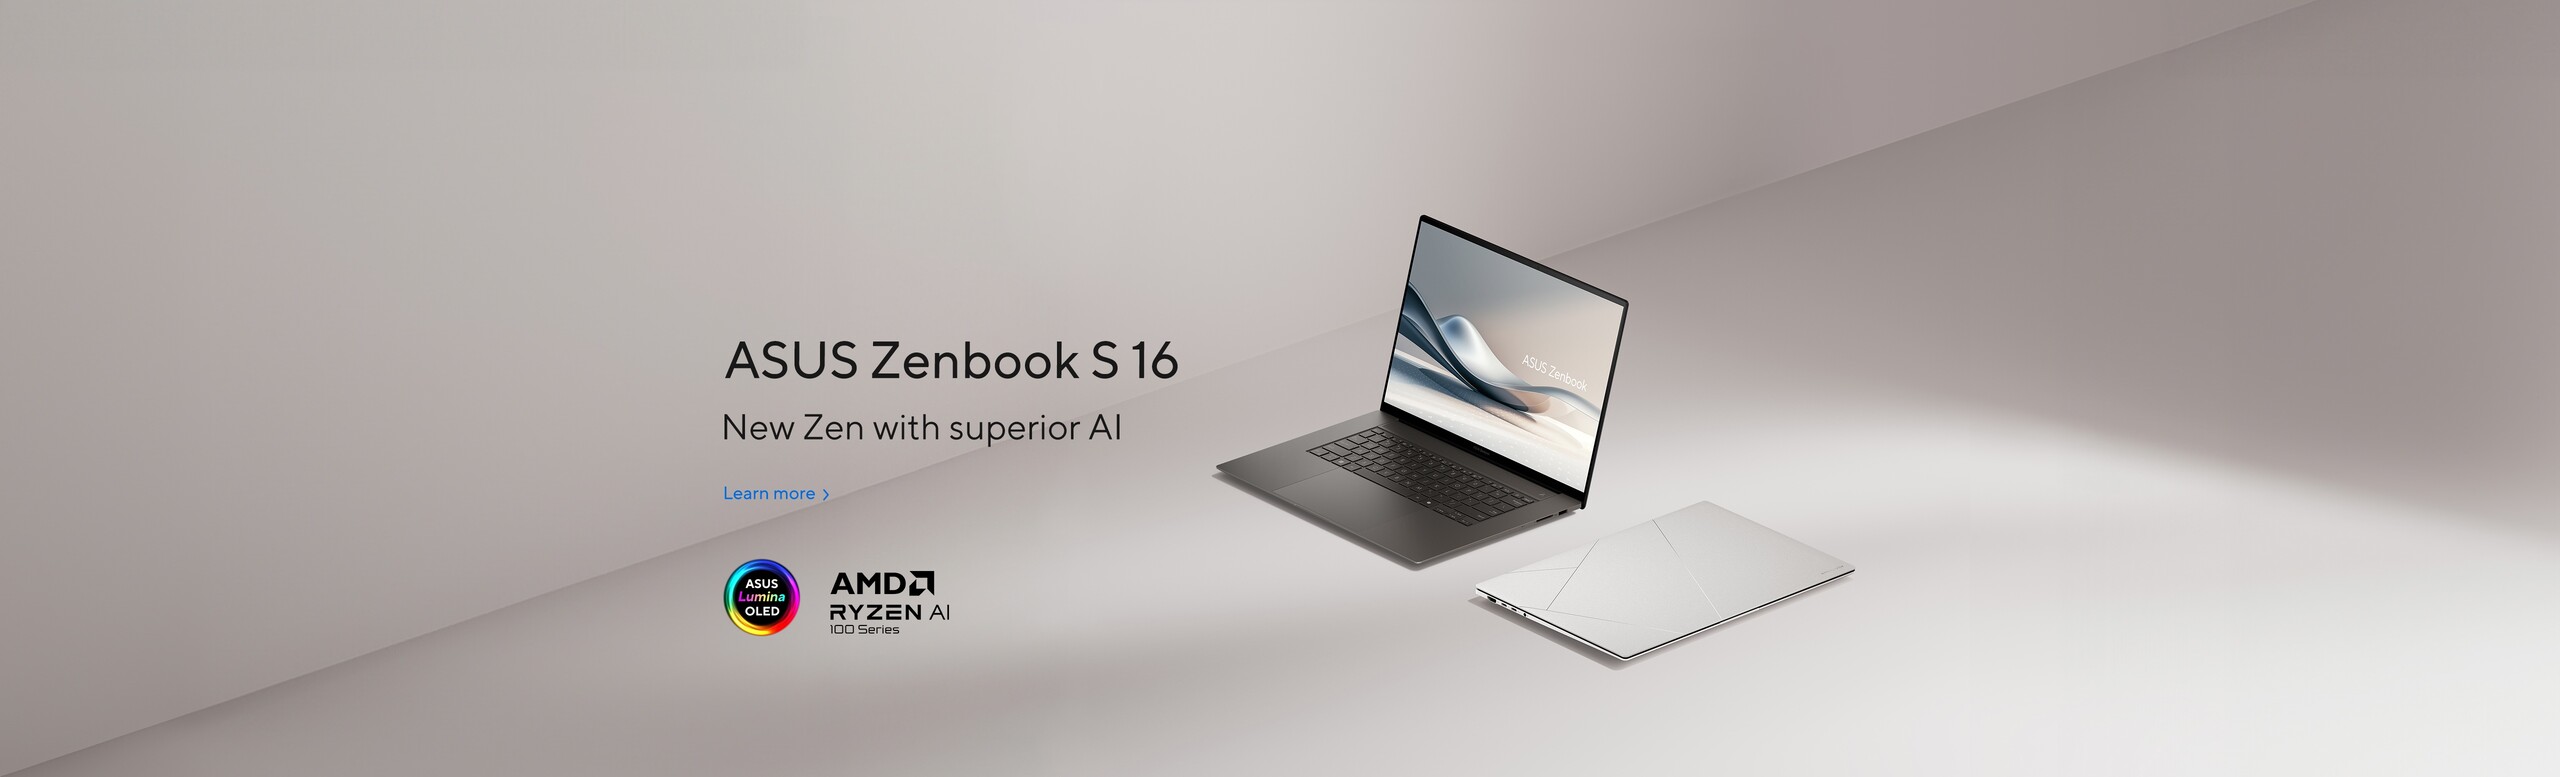 Zenbook S16